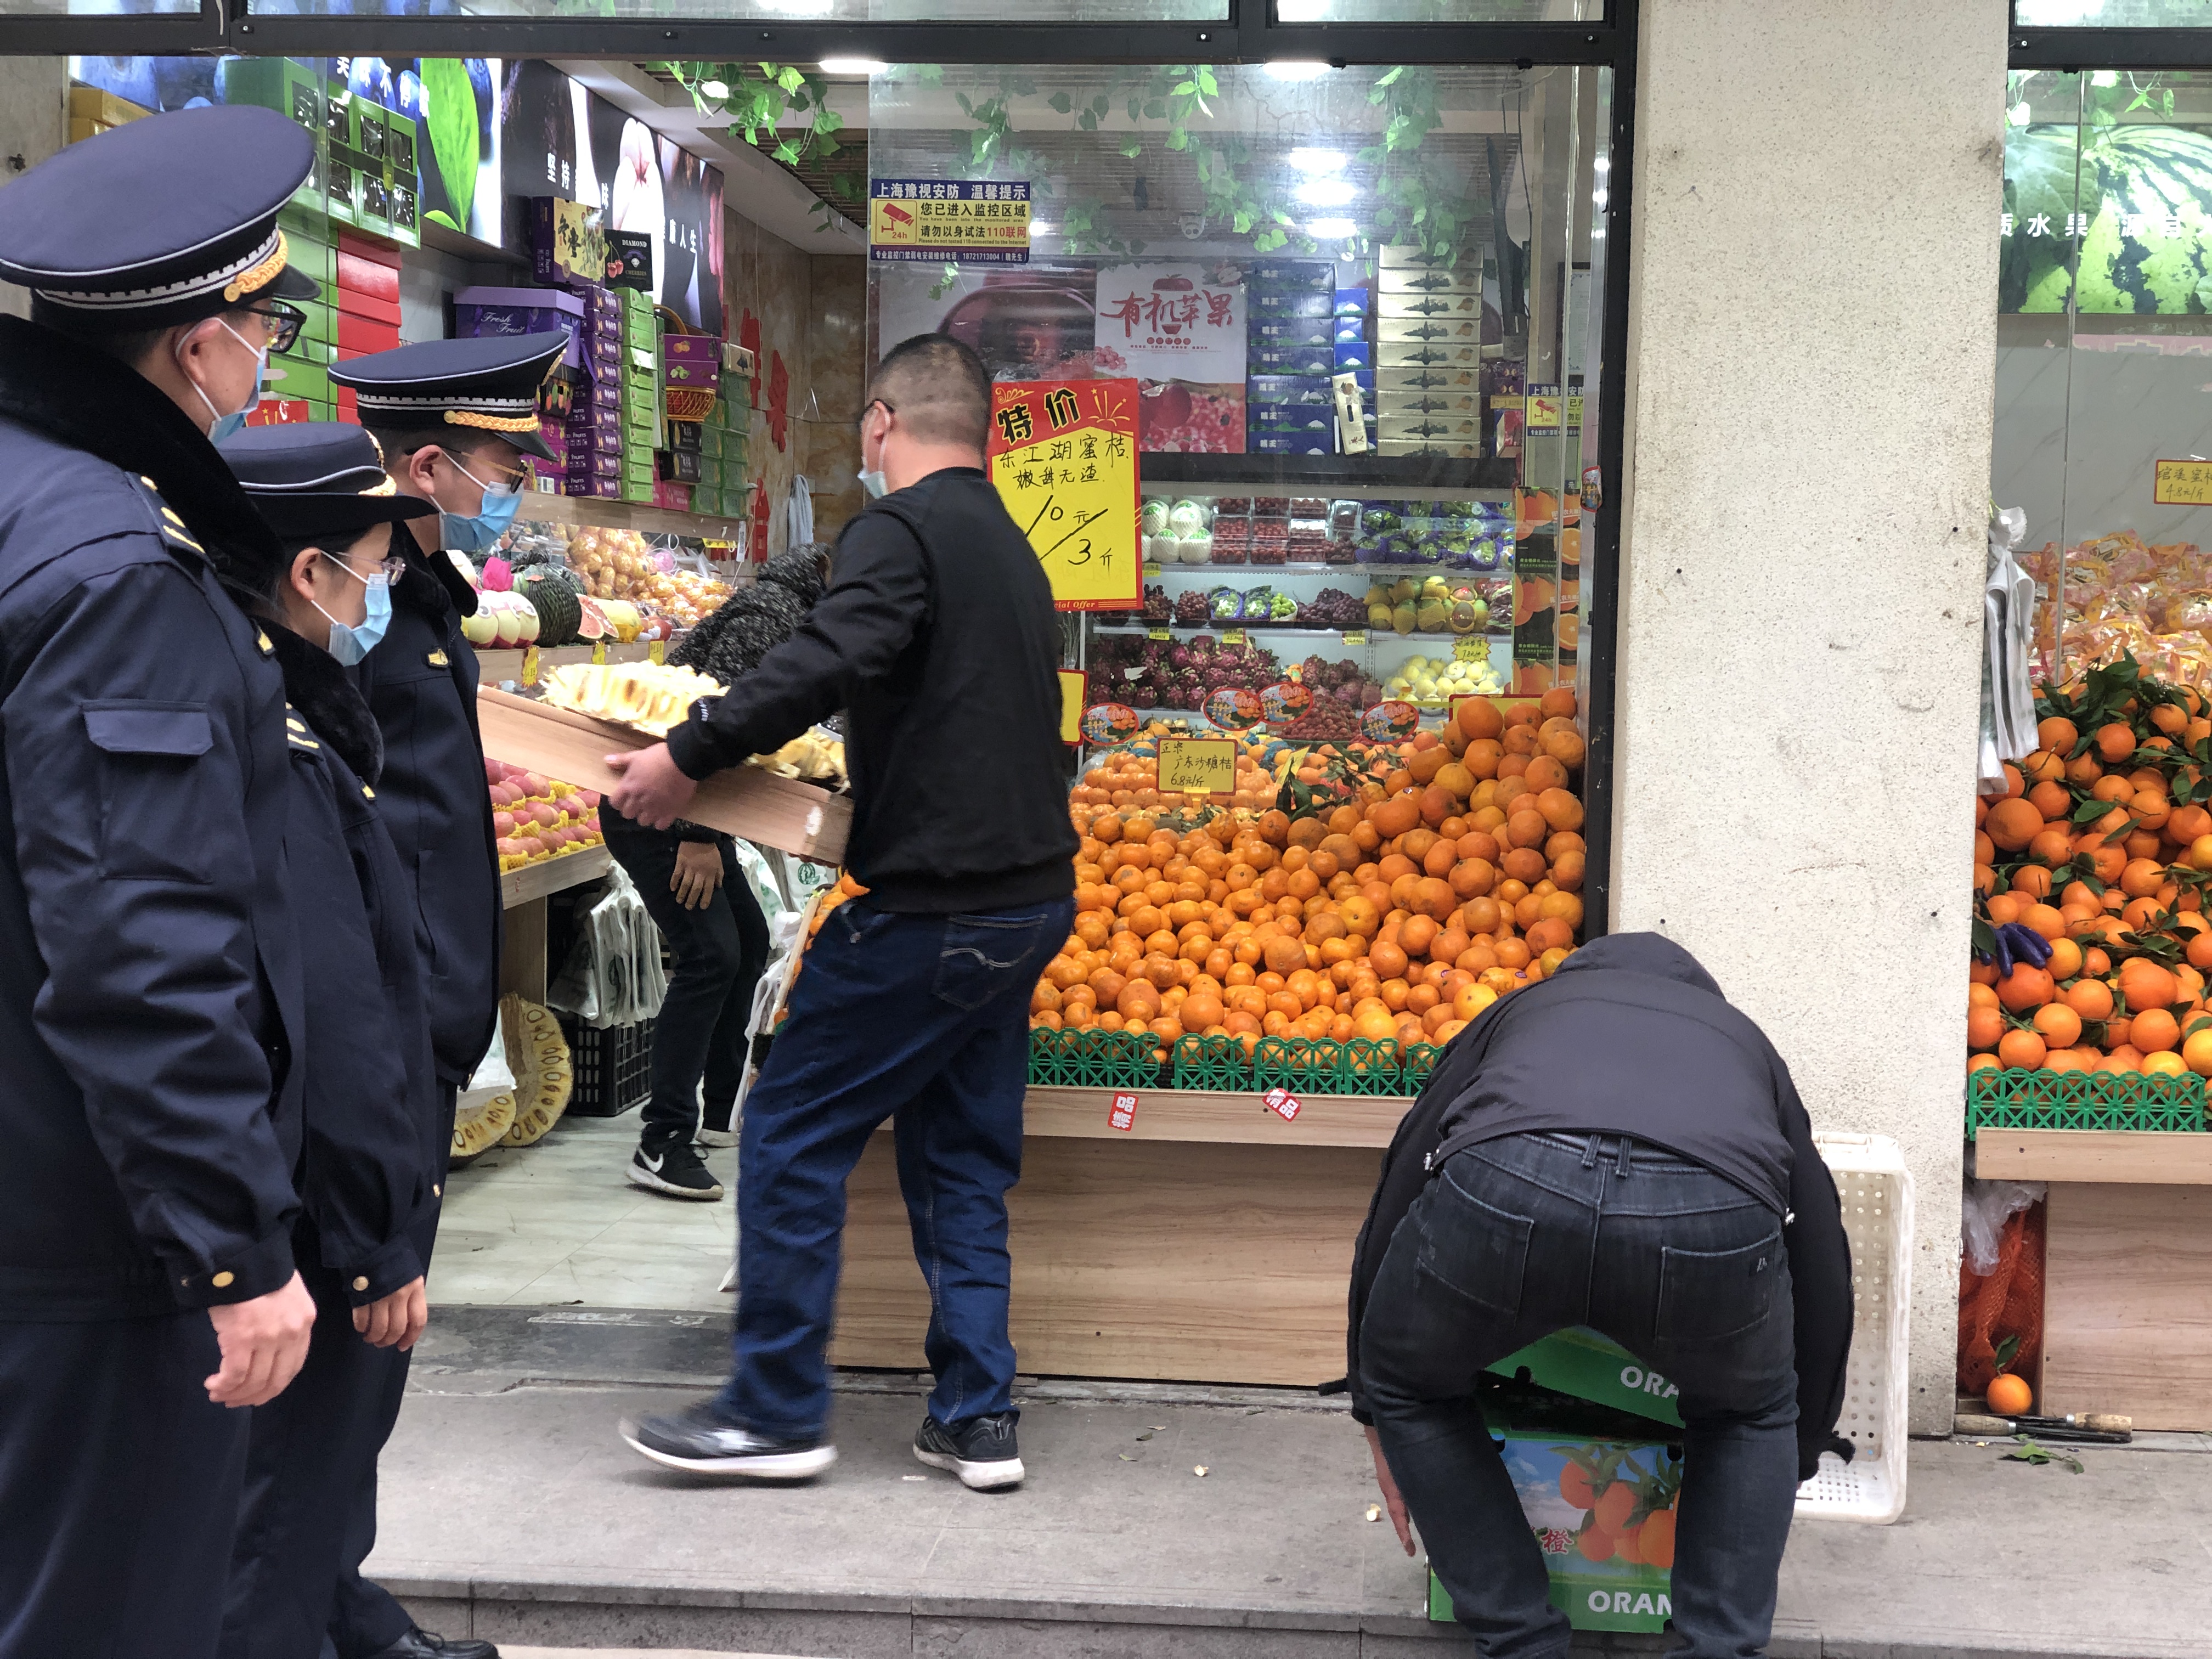 城管指导商贩将超出门窗陈设的水果搬进店内。